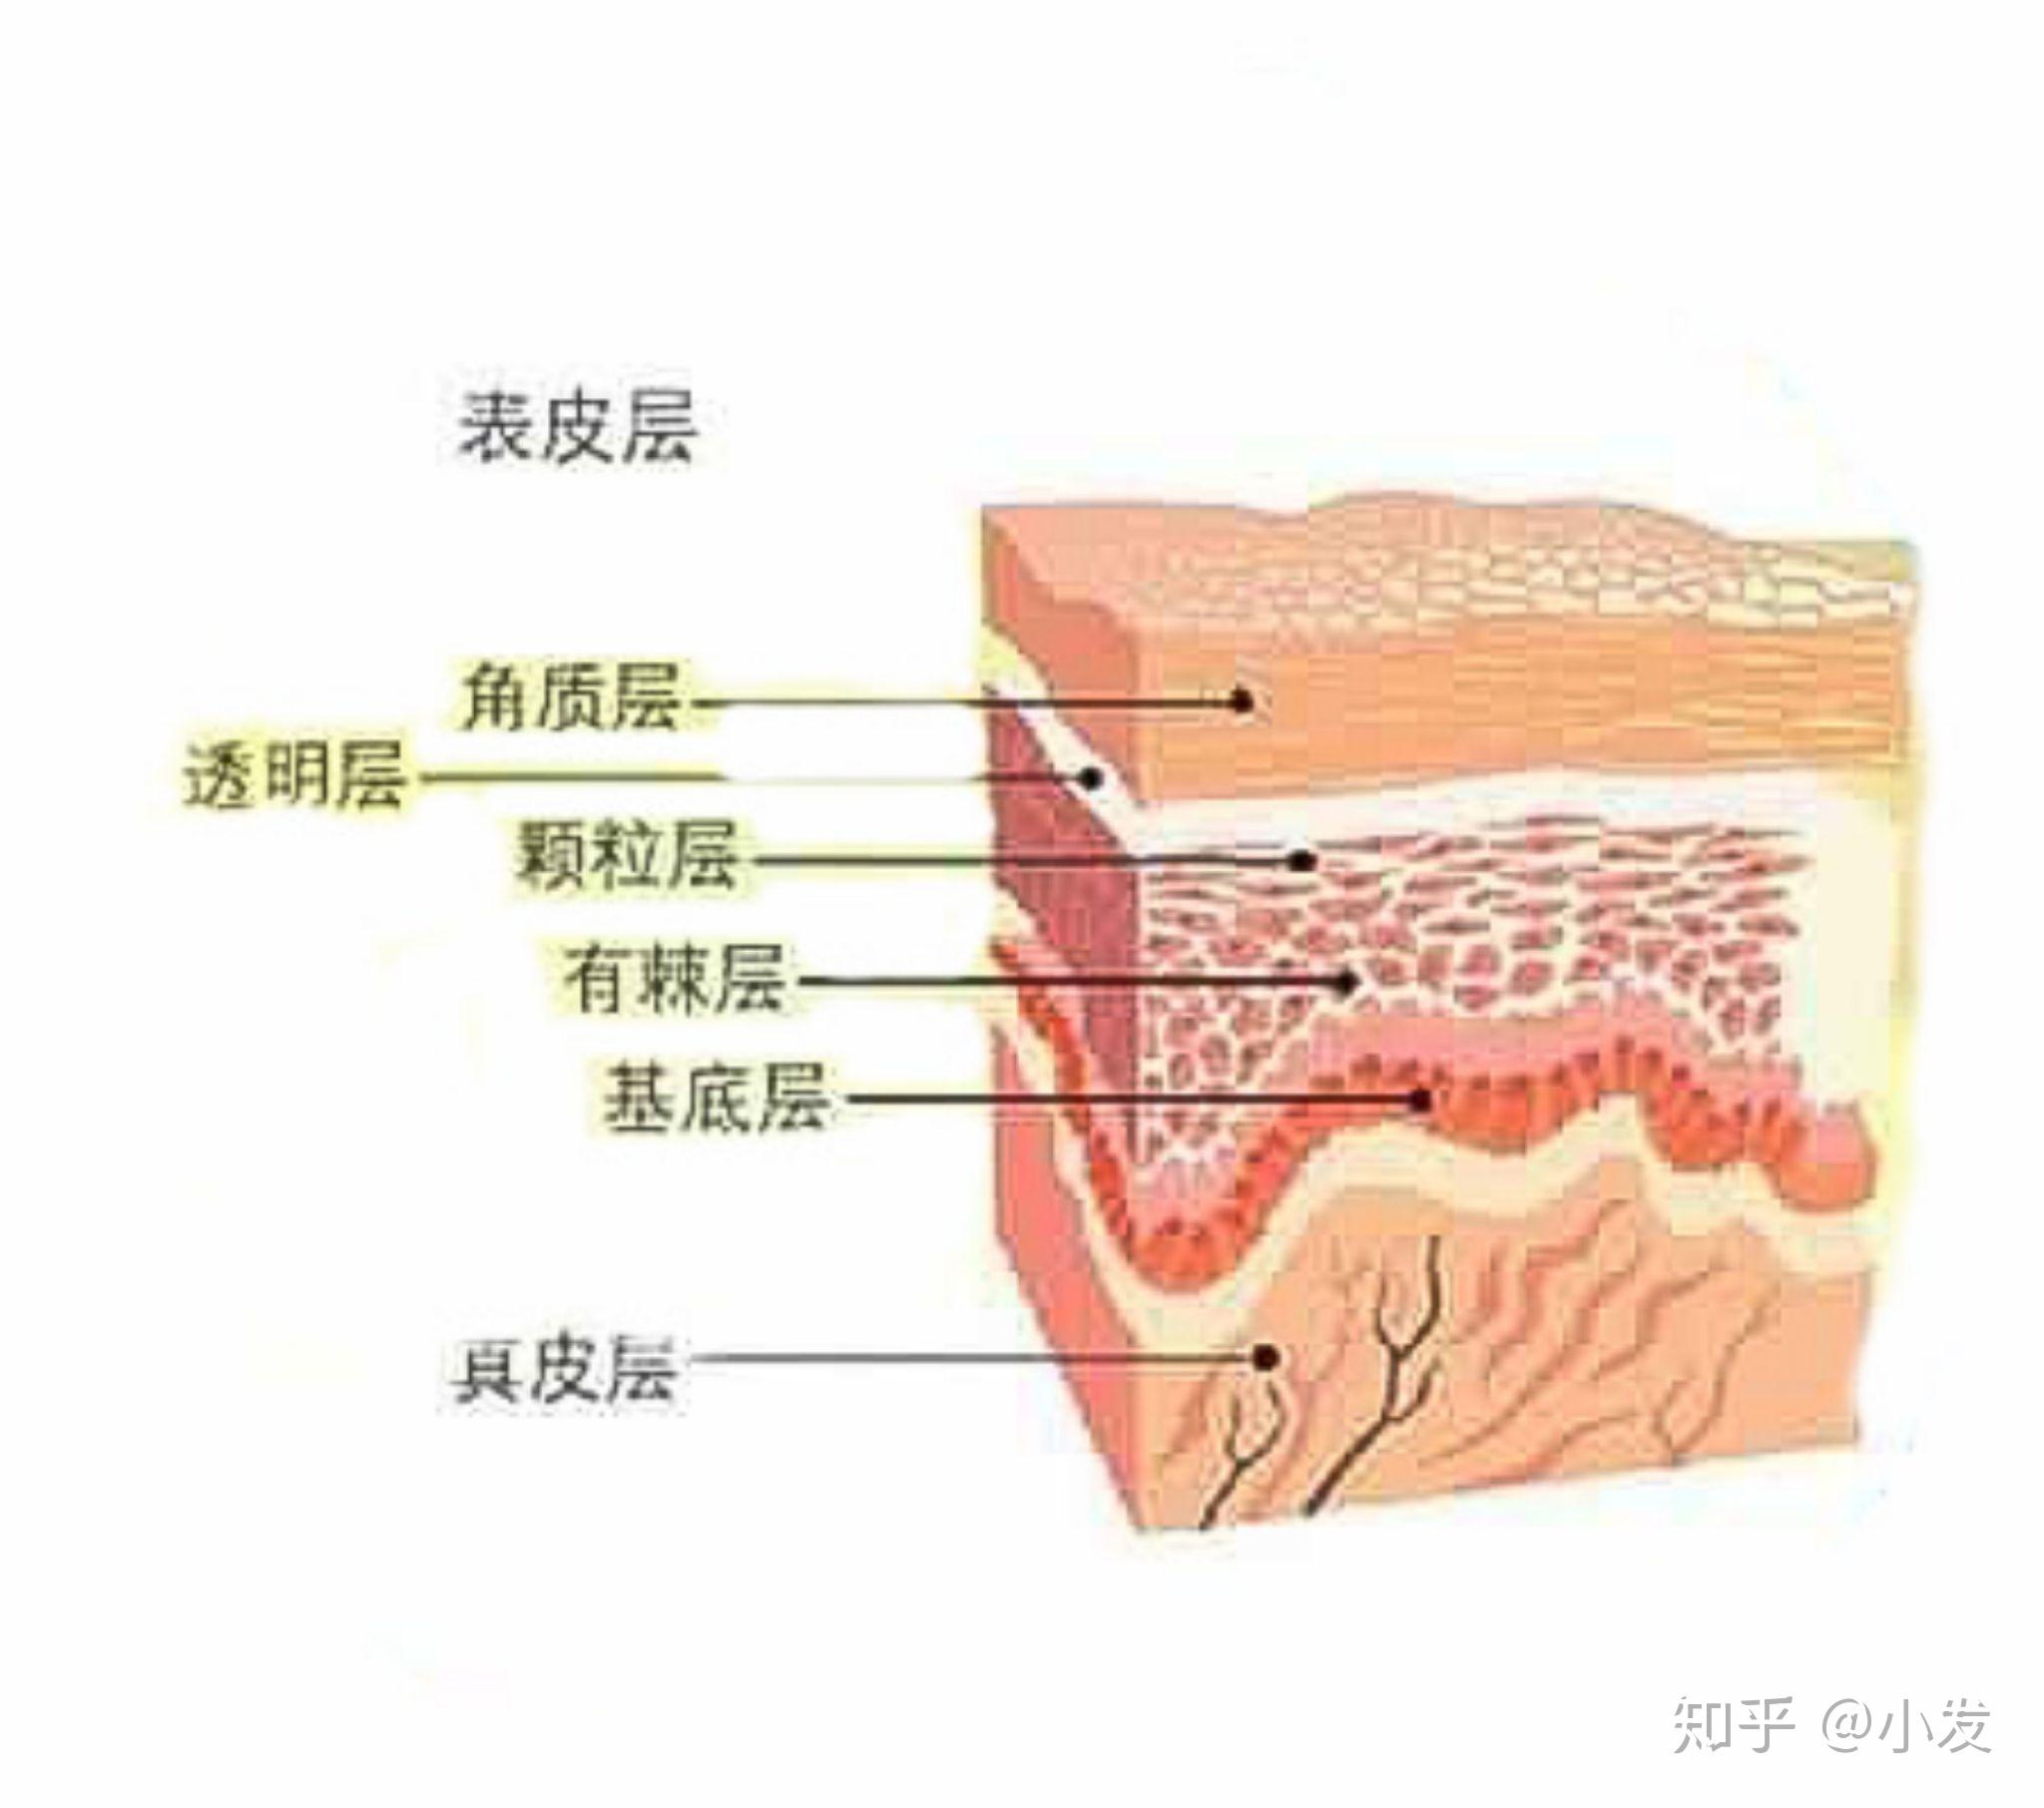 人体的皮肤分为三层,第一层就是上图的表皮层